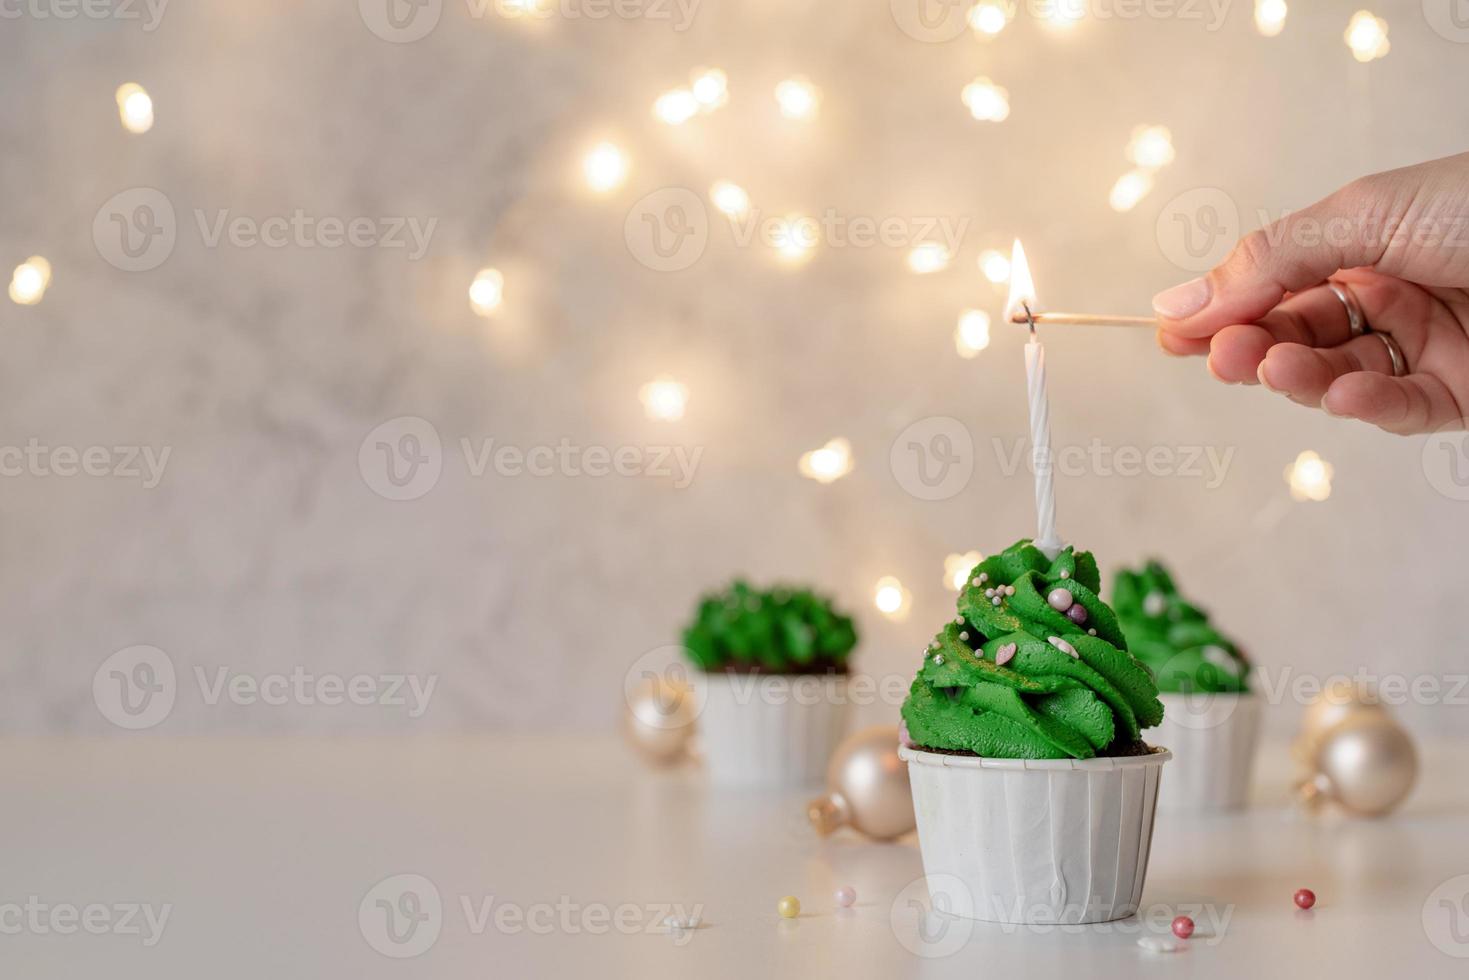 kerstboomvormige cupcakes, omringd met feestelijke versieringen en lichtjes op de achtergrond foto